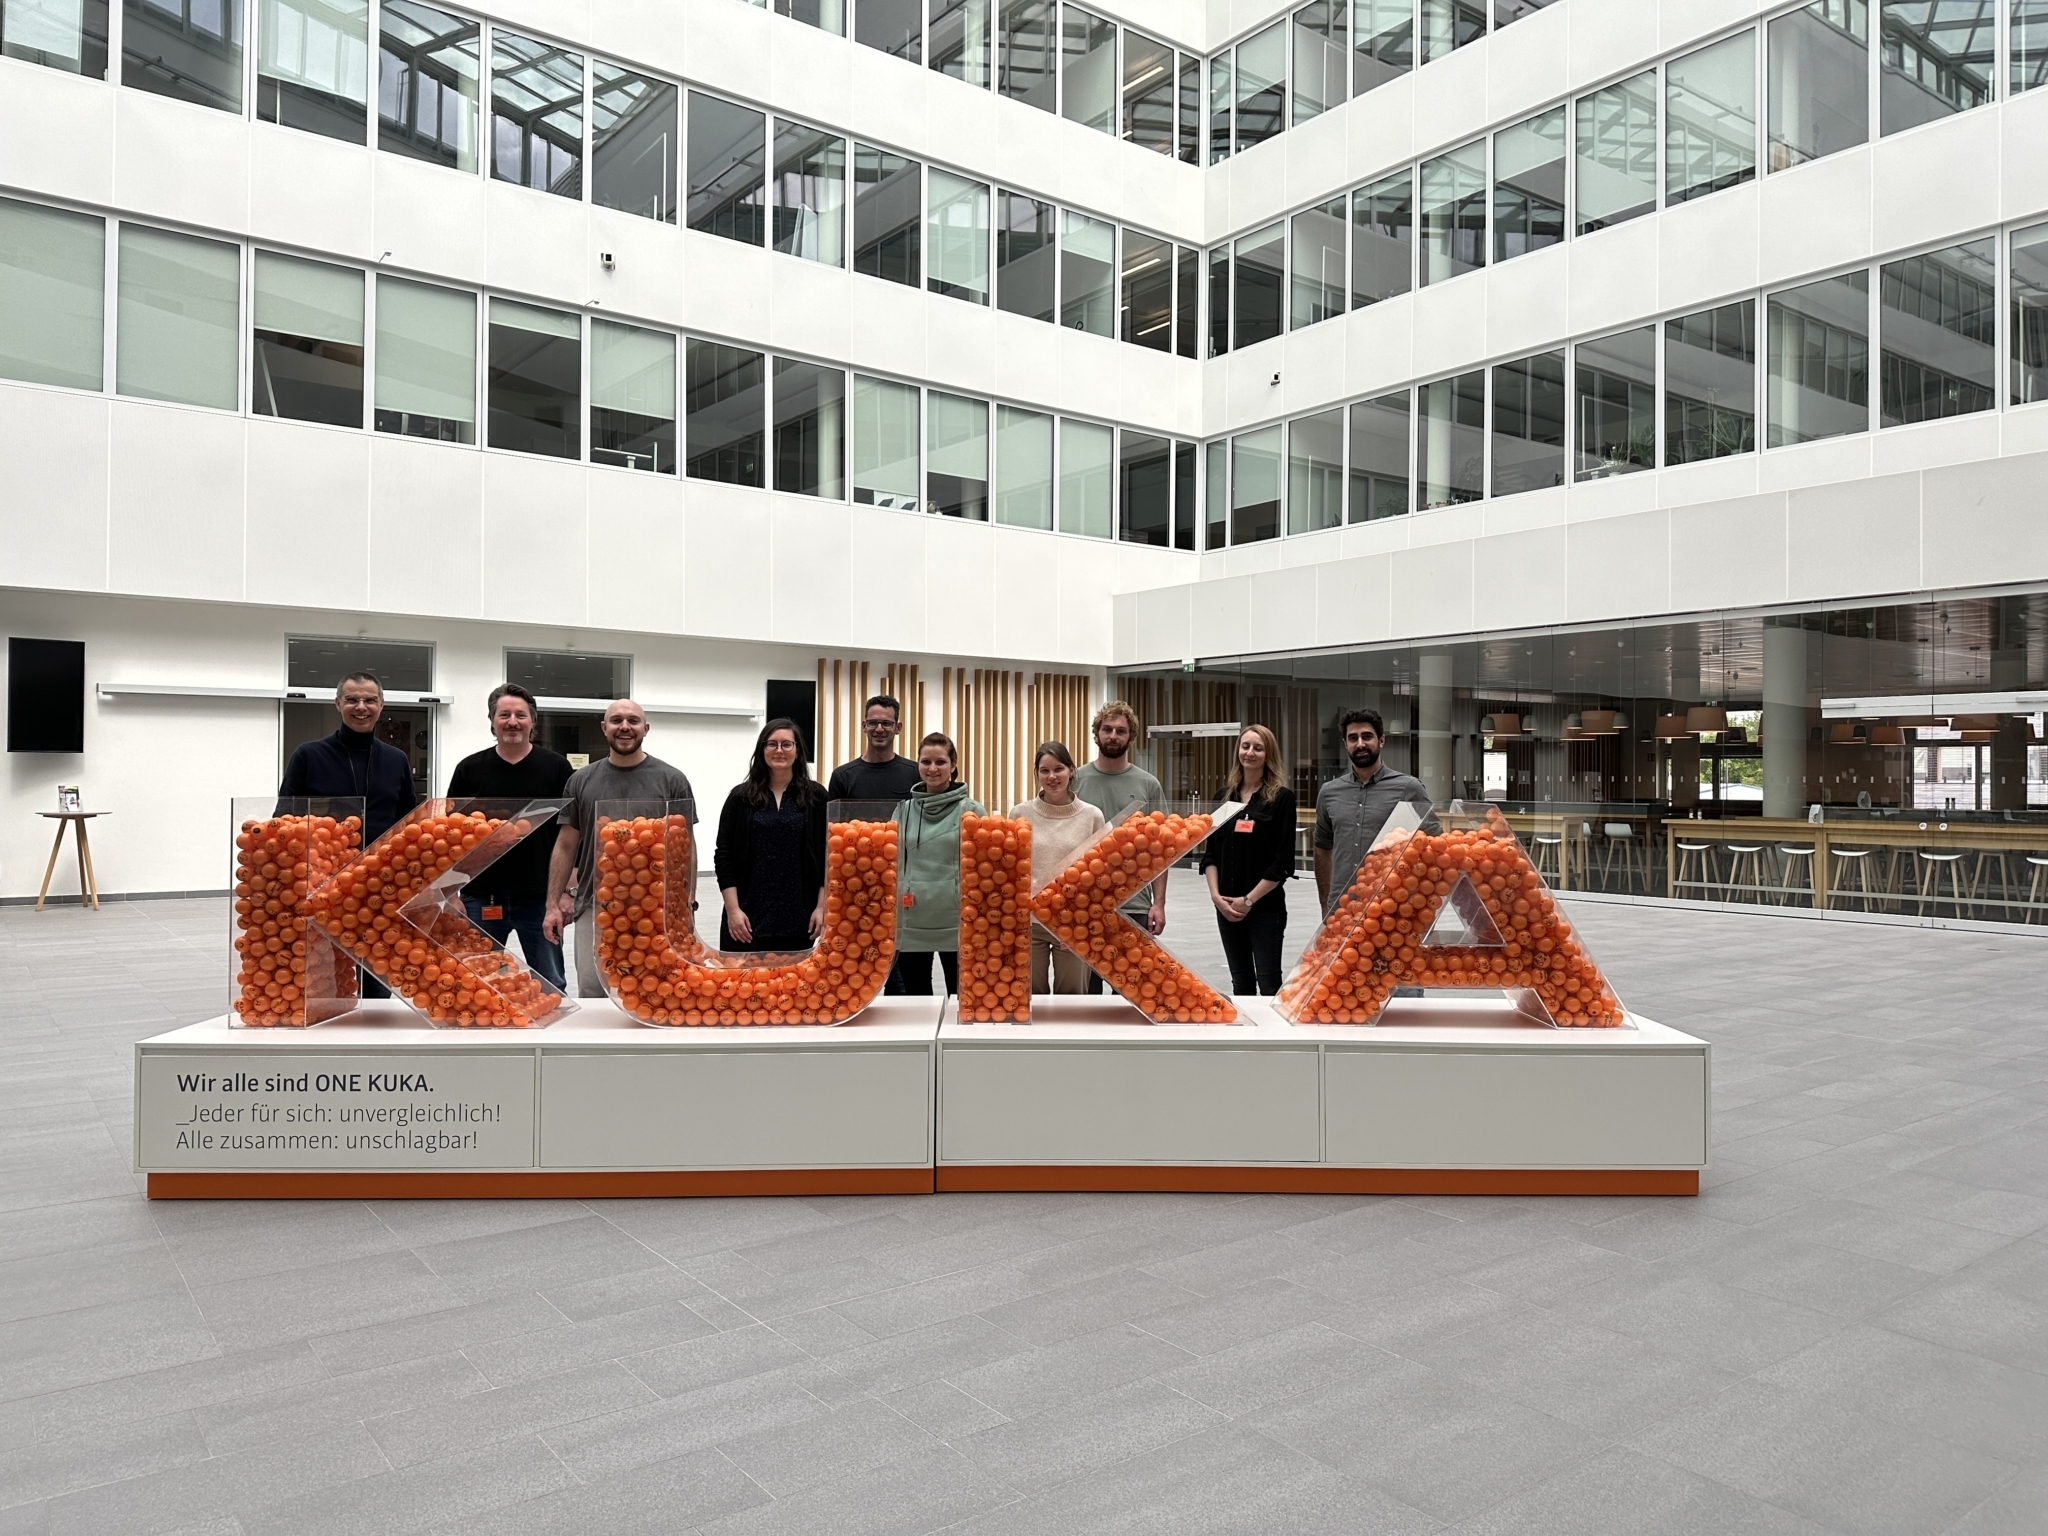 KUKA Schriftzug aus Plexiglas gefüllt mit orangen Bällen und dahinter stehen ein Gruppe Menschen mit Blick in die Kamera